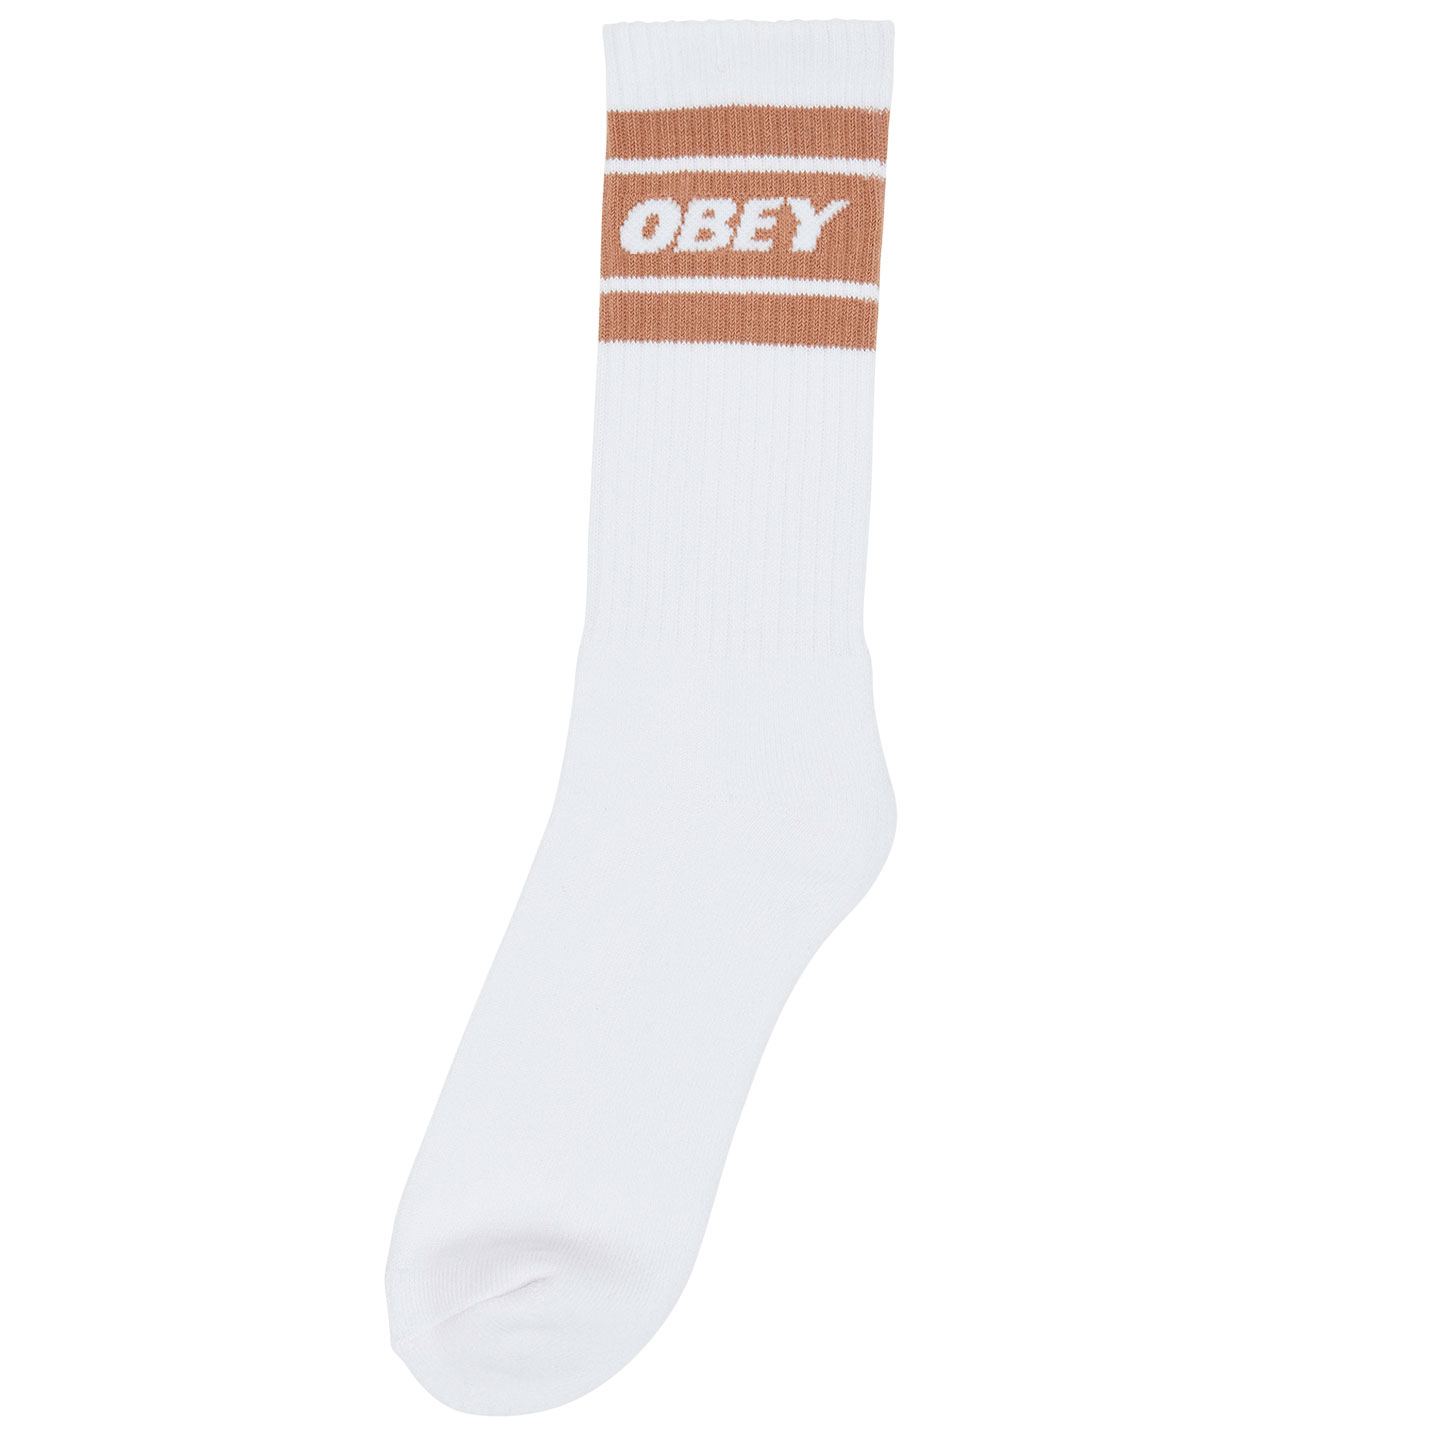 OBEY - Cooper II Socks, White/Brown Sugar